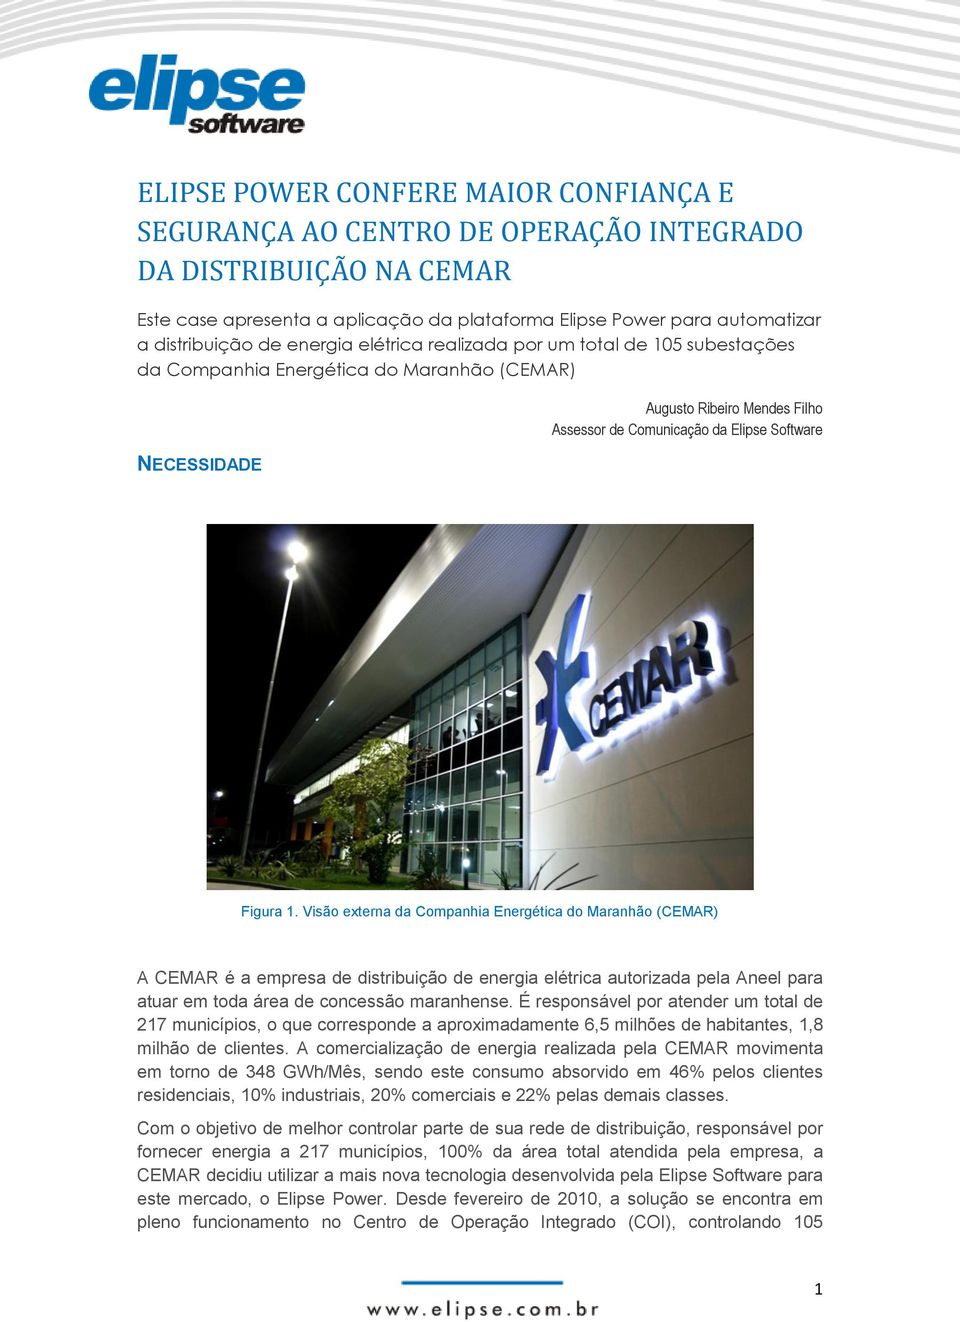 Visão externa da Companhia Energética do Maranhão (CEMAR) A CEMAR é a empresa de distribuição de energia elétrica autorizada pela Aneel para atuar em toda área de concessão maranhense.